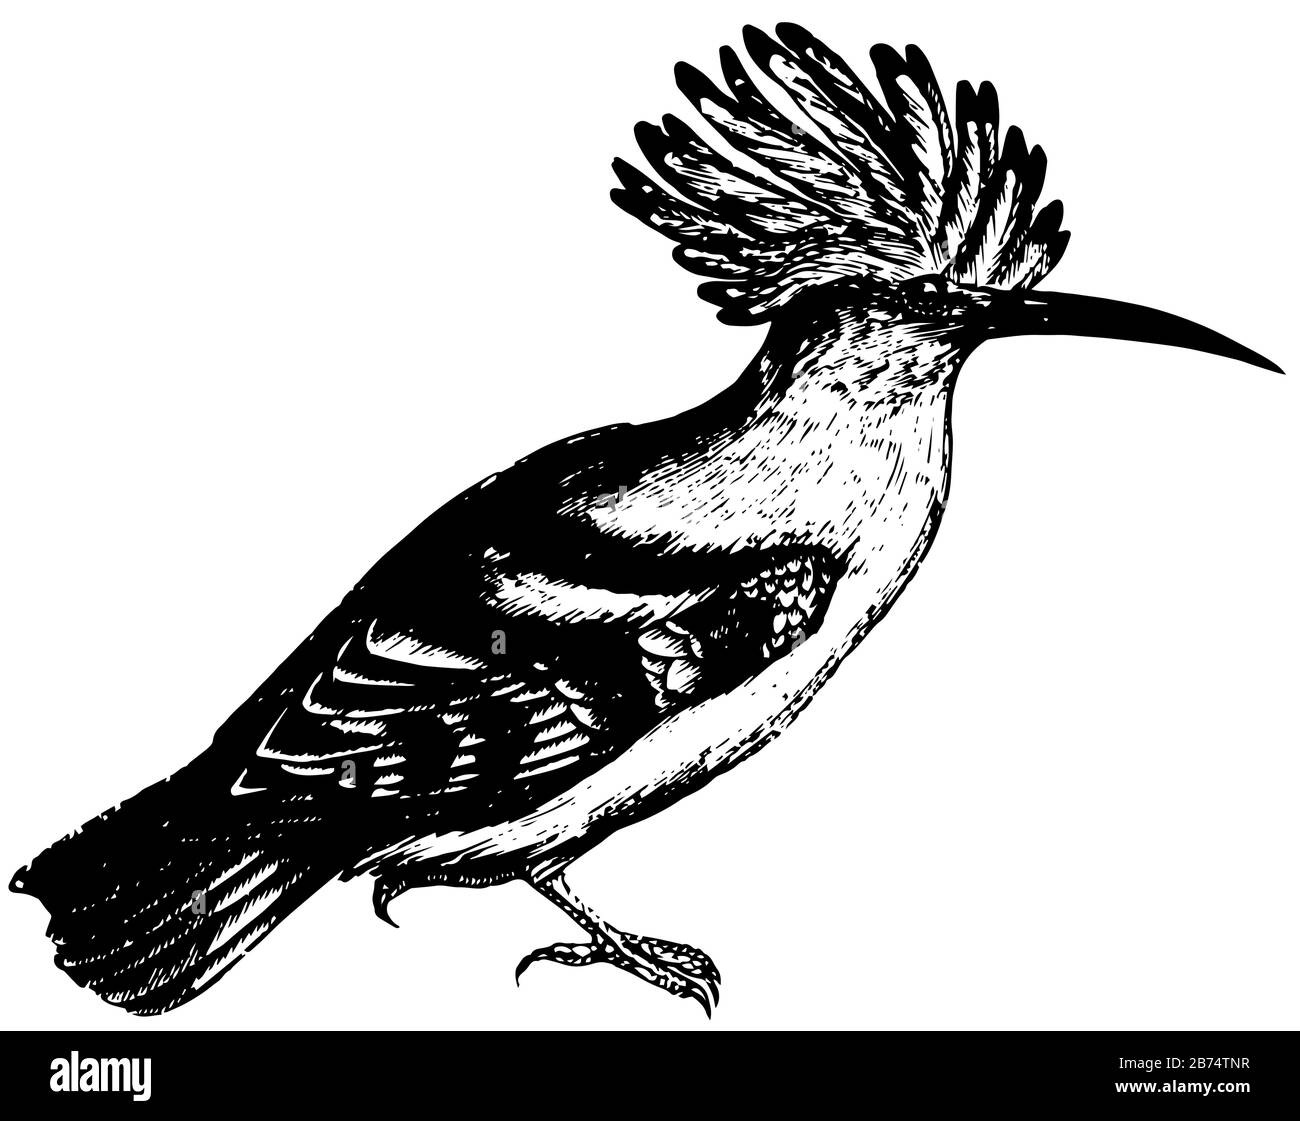 Hoopoe ist ein farbenfroher Vogel, der in Afro Eurasien zu finden ist und sich durch seine markante Federkrone, die Vintage-Zeichnung oder die Gravurdarstellung auszeichnet. Stock Vektor